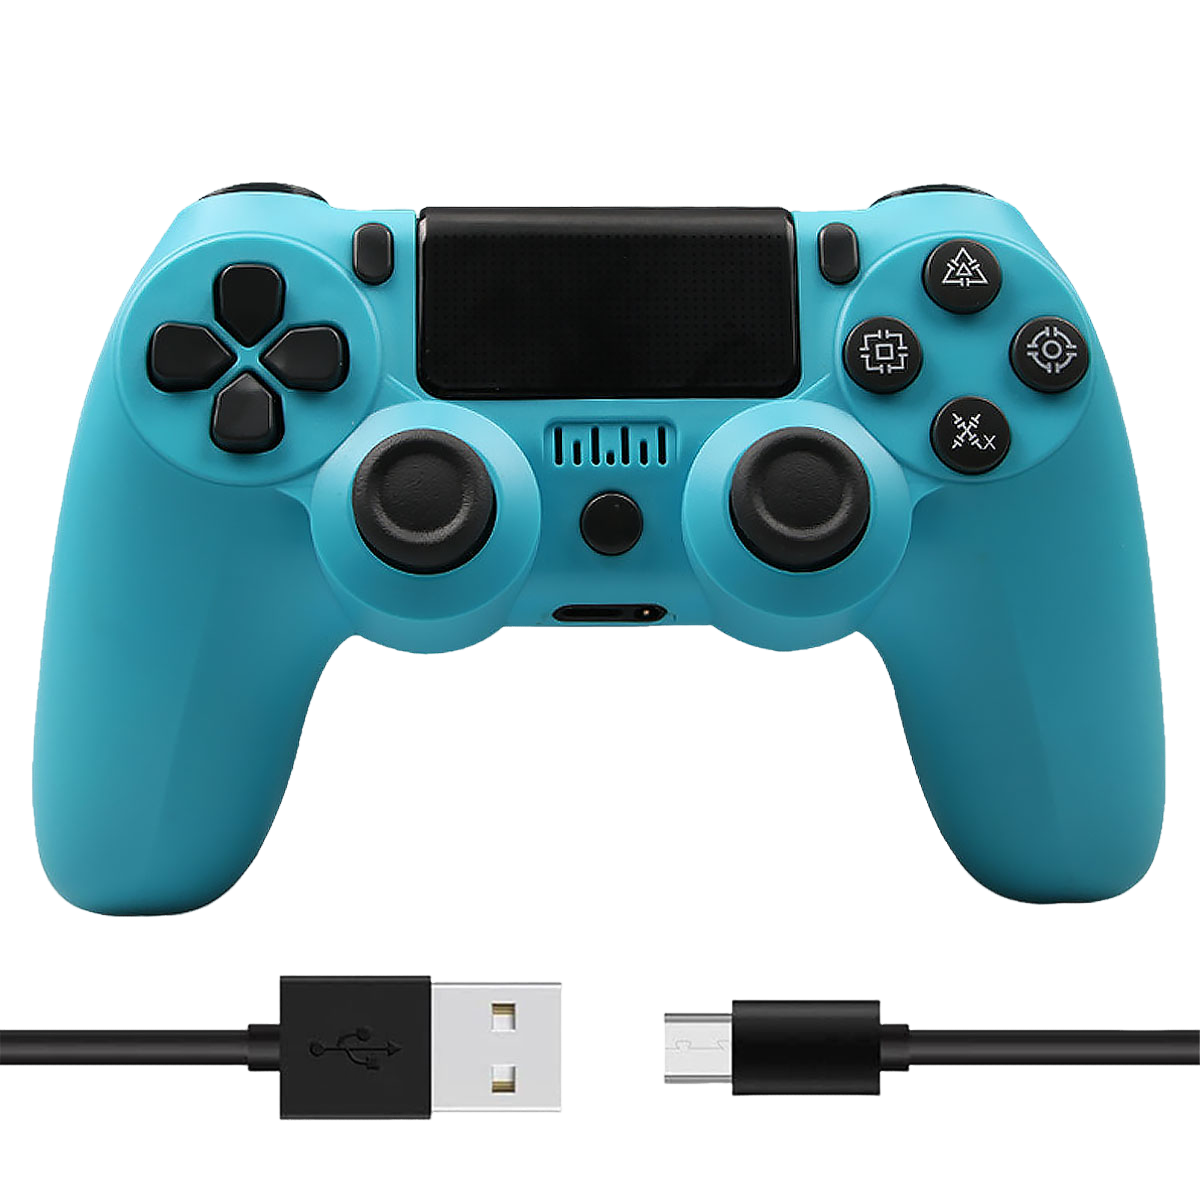 TADOW Gamepad, für Gamepad PC/PS3/PS4 blau Blau, Bluetooth, Controller Joystick, Remote